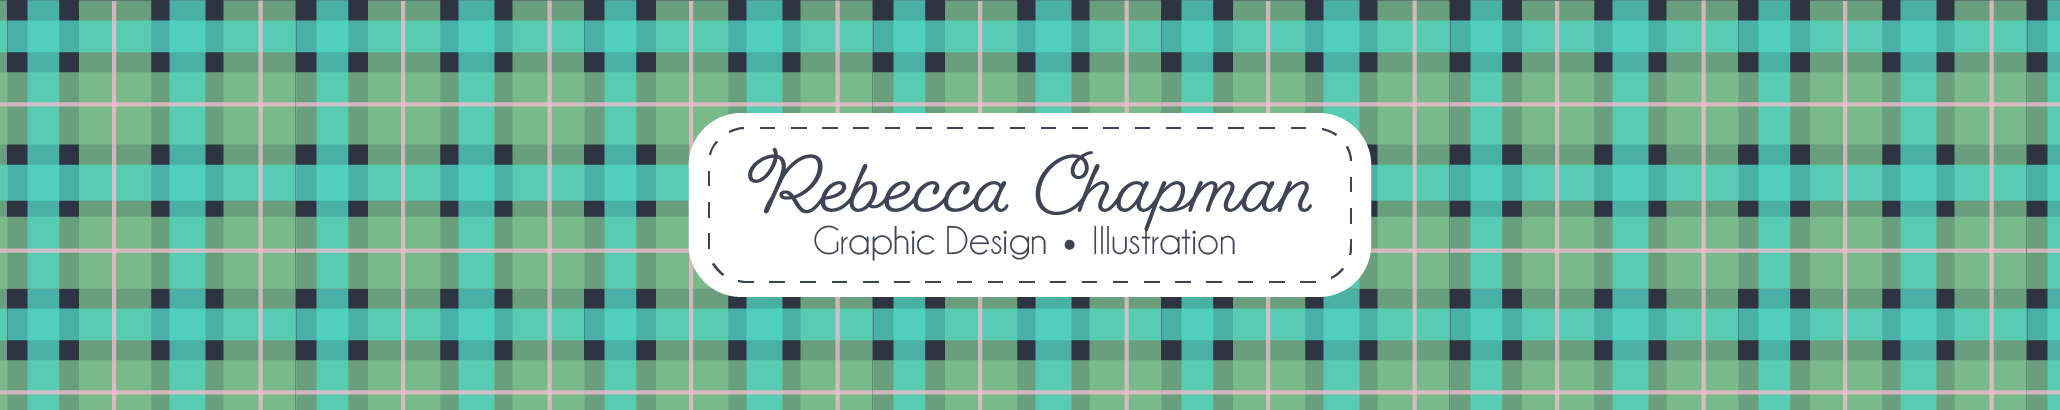 Rebecca Chapman's profile banner